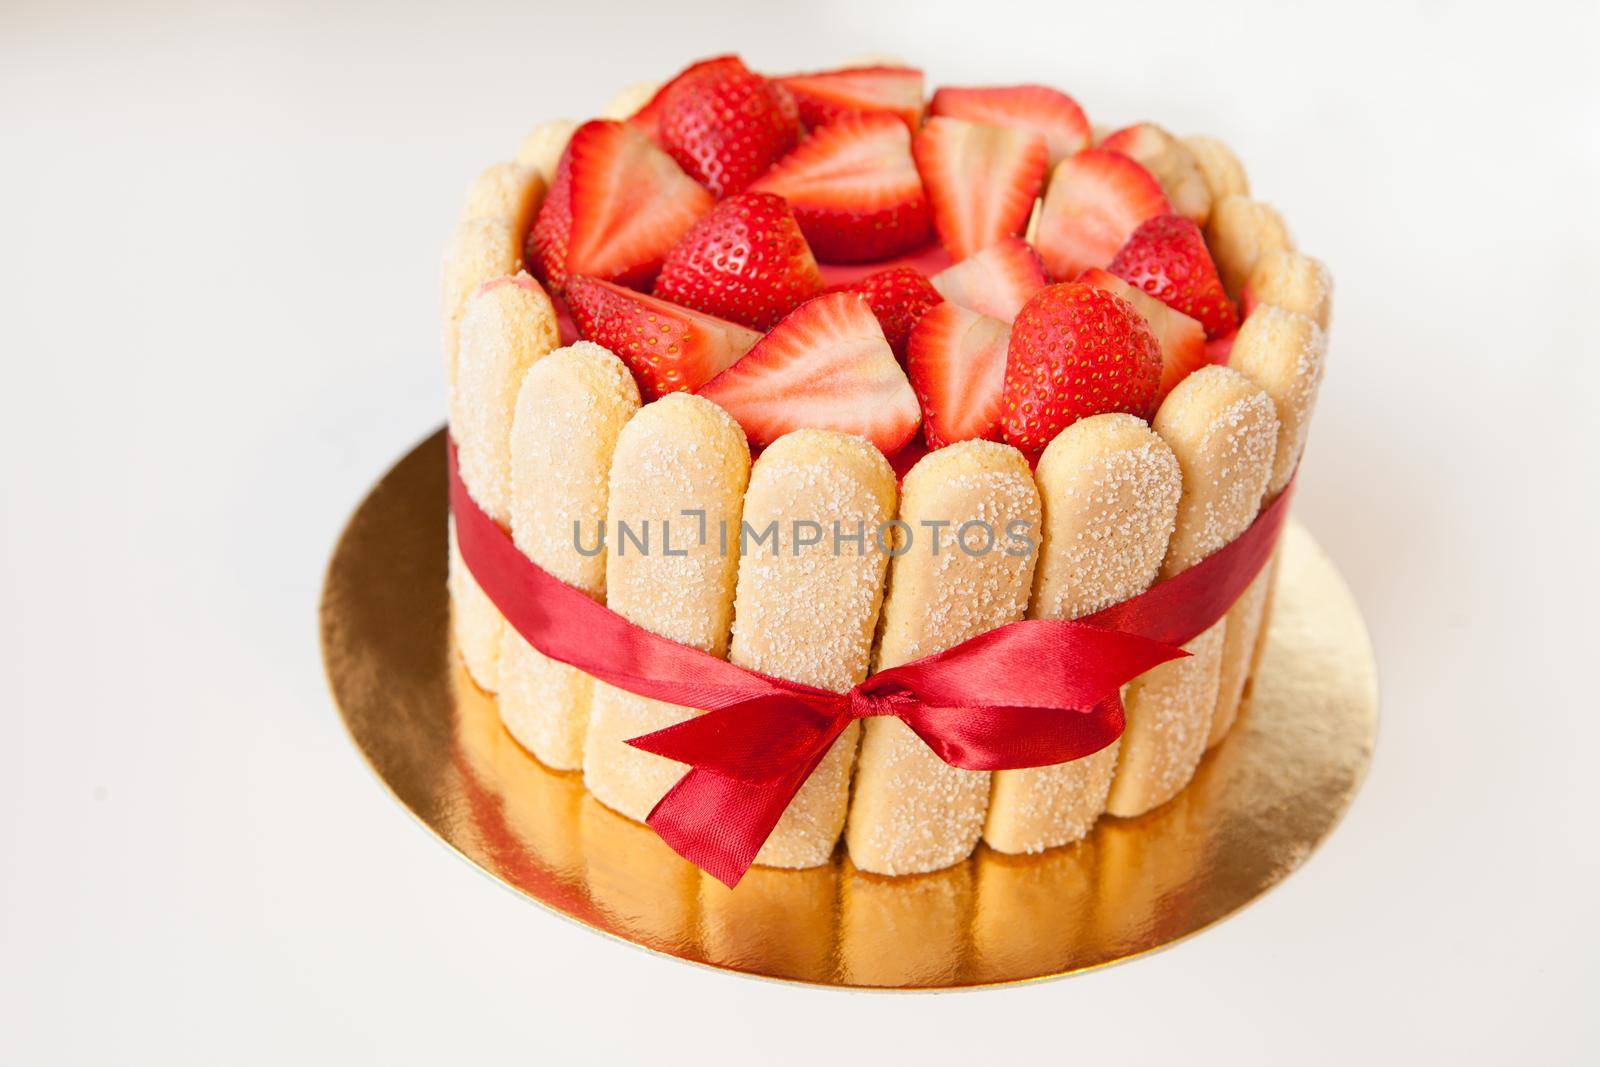 tiramisu cake with strawberries, ladyfingers, mascarpone and red bow-tape isolated on white. summer fruit charlotte cake on table